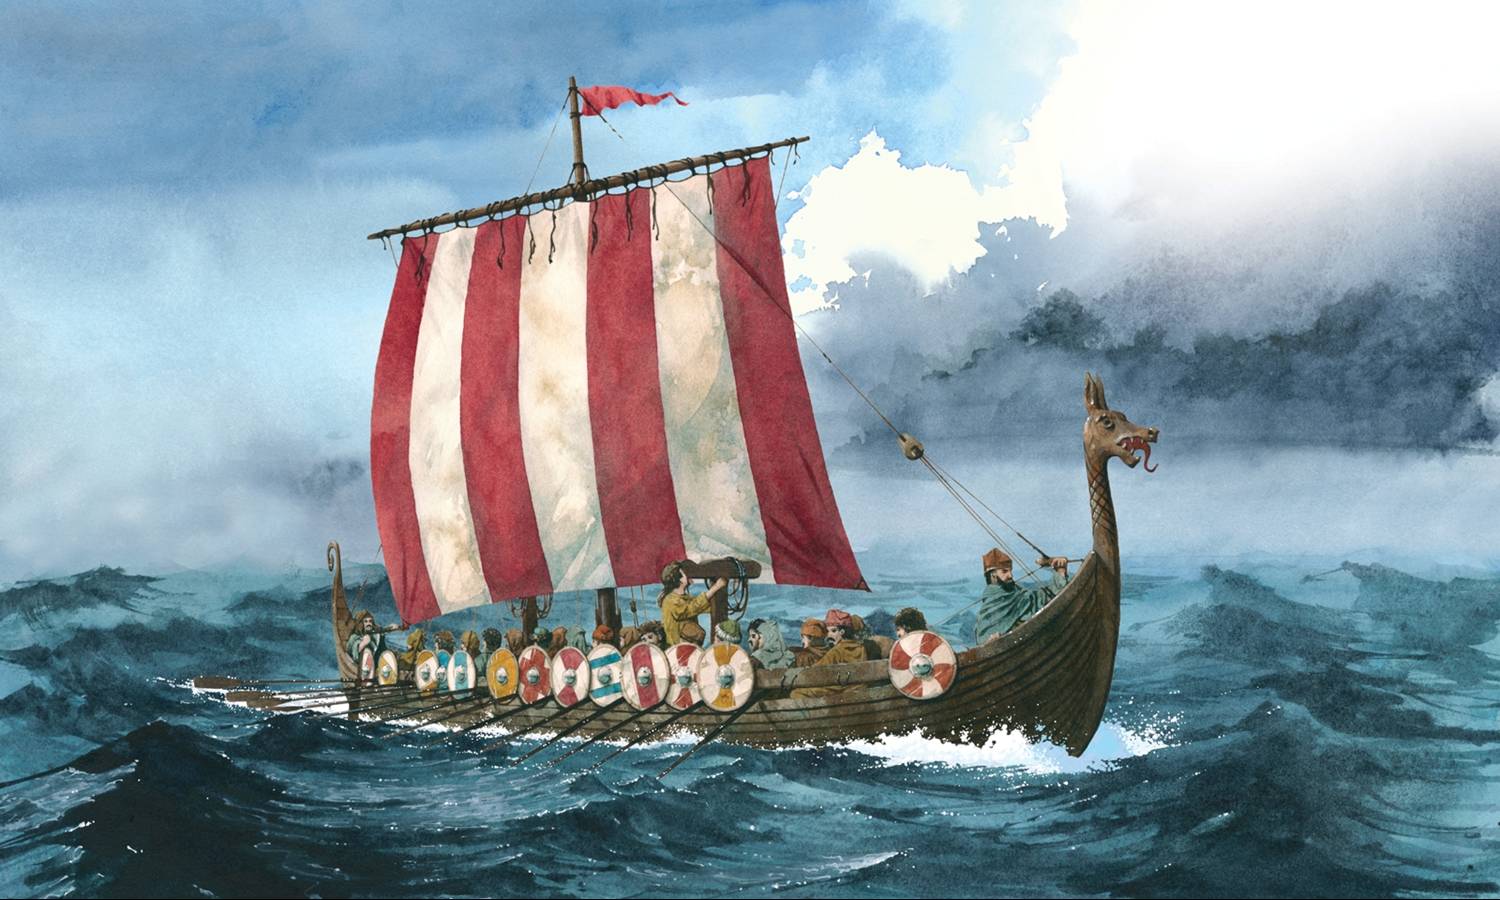 Vikings - antigos conquistadores escandinavos - Pakhotin